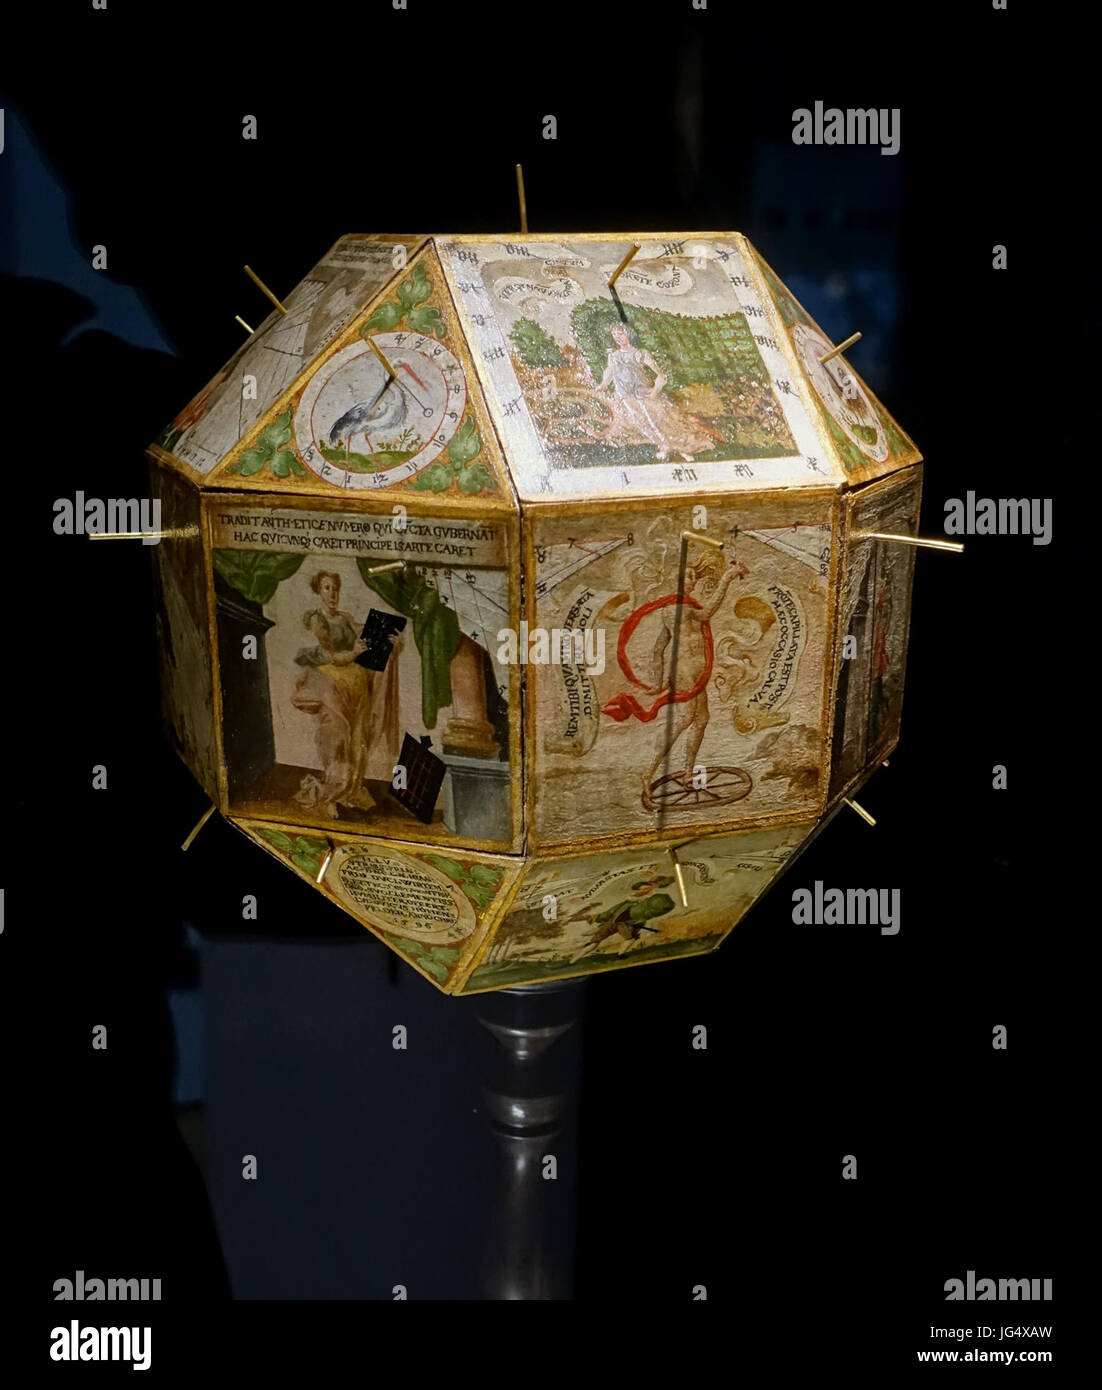 Orologio solare poliedrico di Ludwig von Hohenfeld, con 17 diversi sudials per la regione tra Tubinga e Stoccarda, 1596, legno, carta, ferro, ottone - Landesmuseum Württemberg - Stuttgart, Germania - DSC03151 Foto Stock